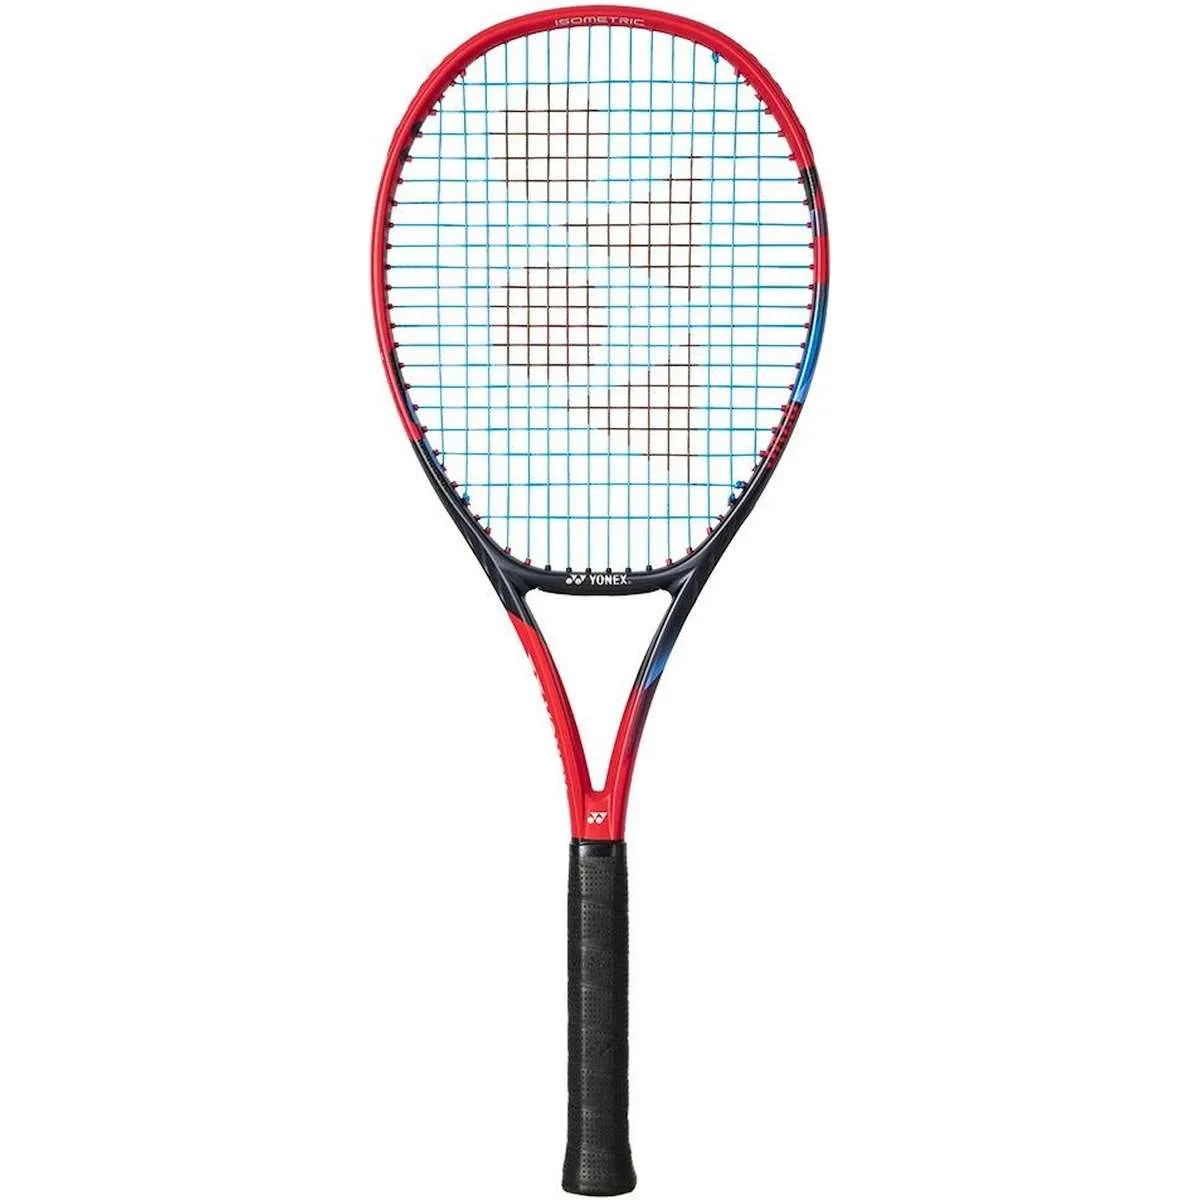 Yonex VCore 95 7th Gen Tennis Racquet (Scarlet)